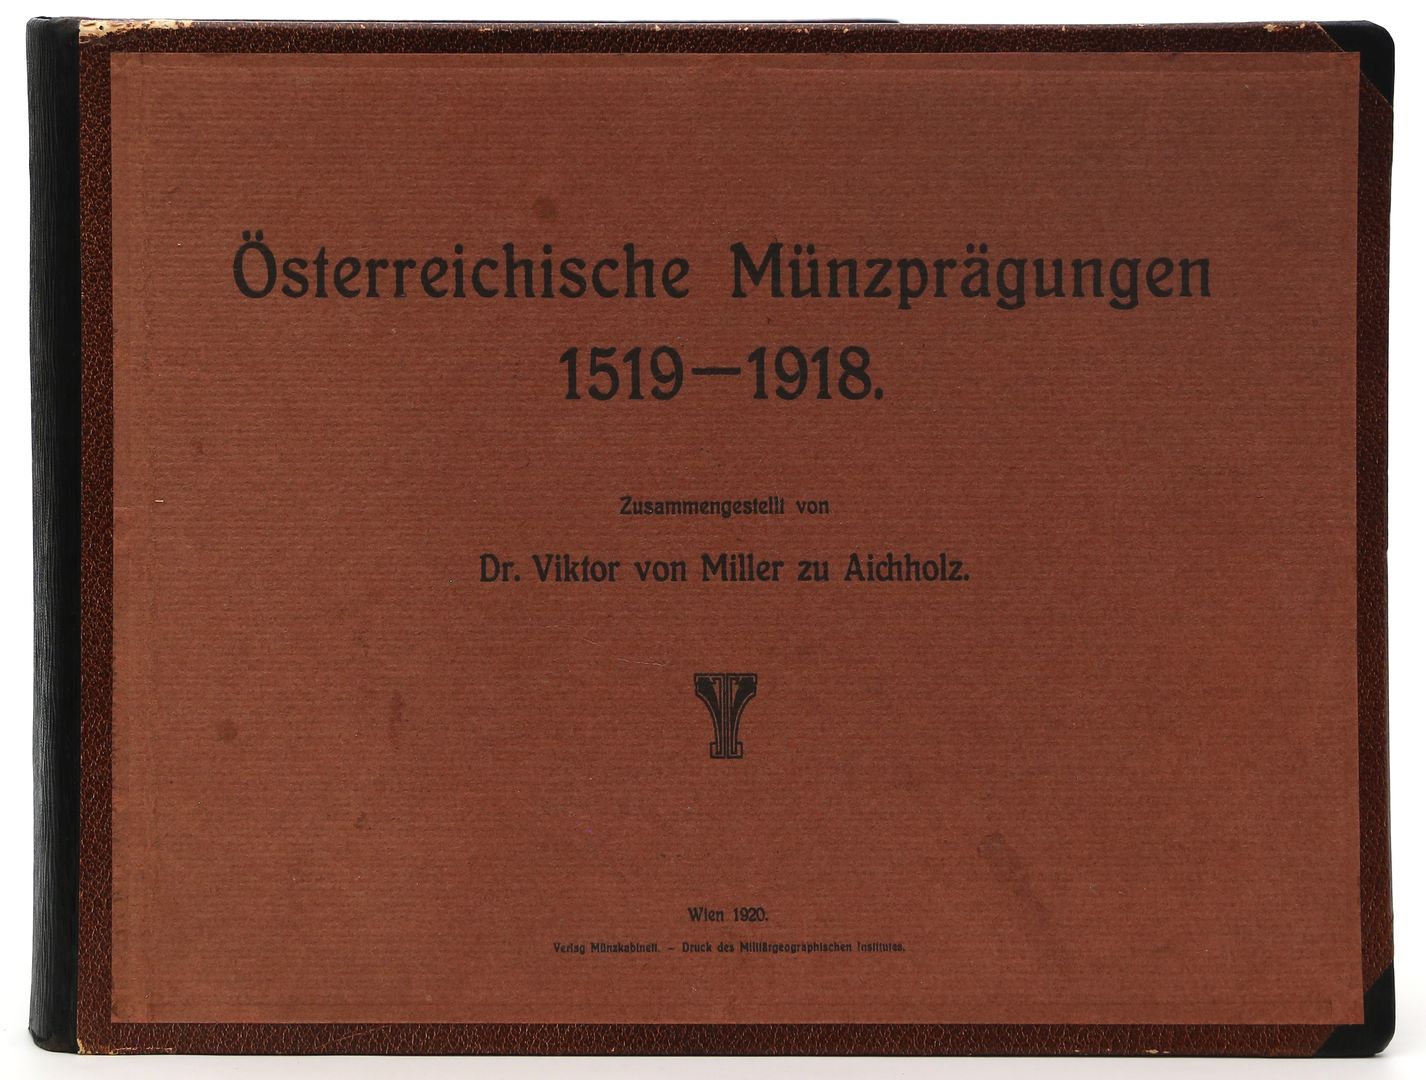 "Österreichische Münzprägungen 1519-1918".